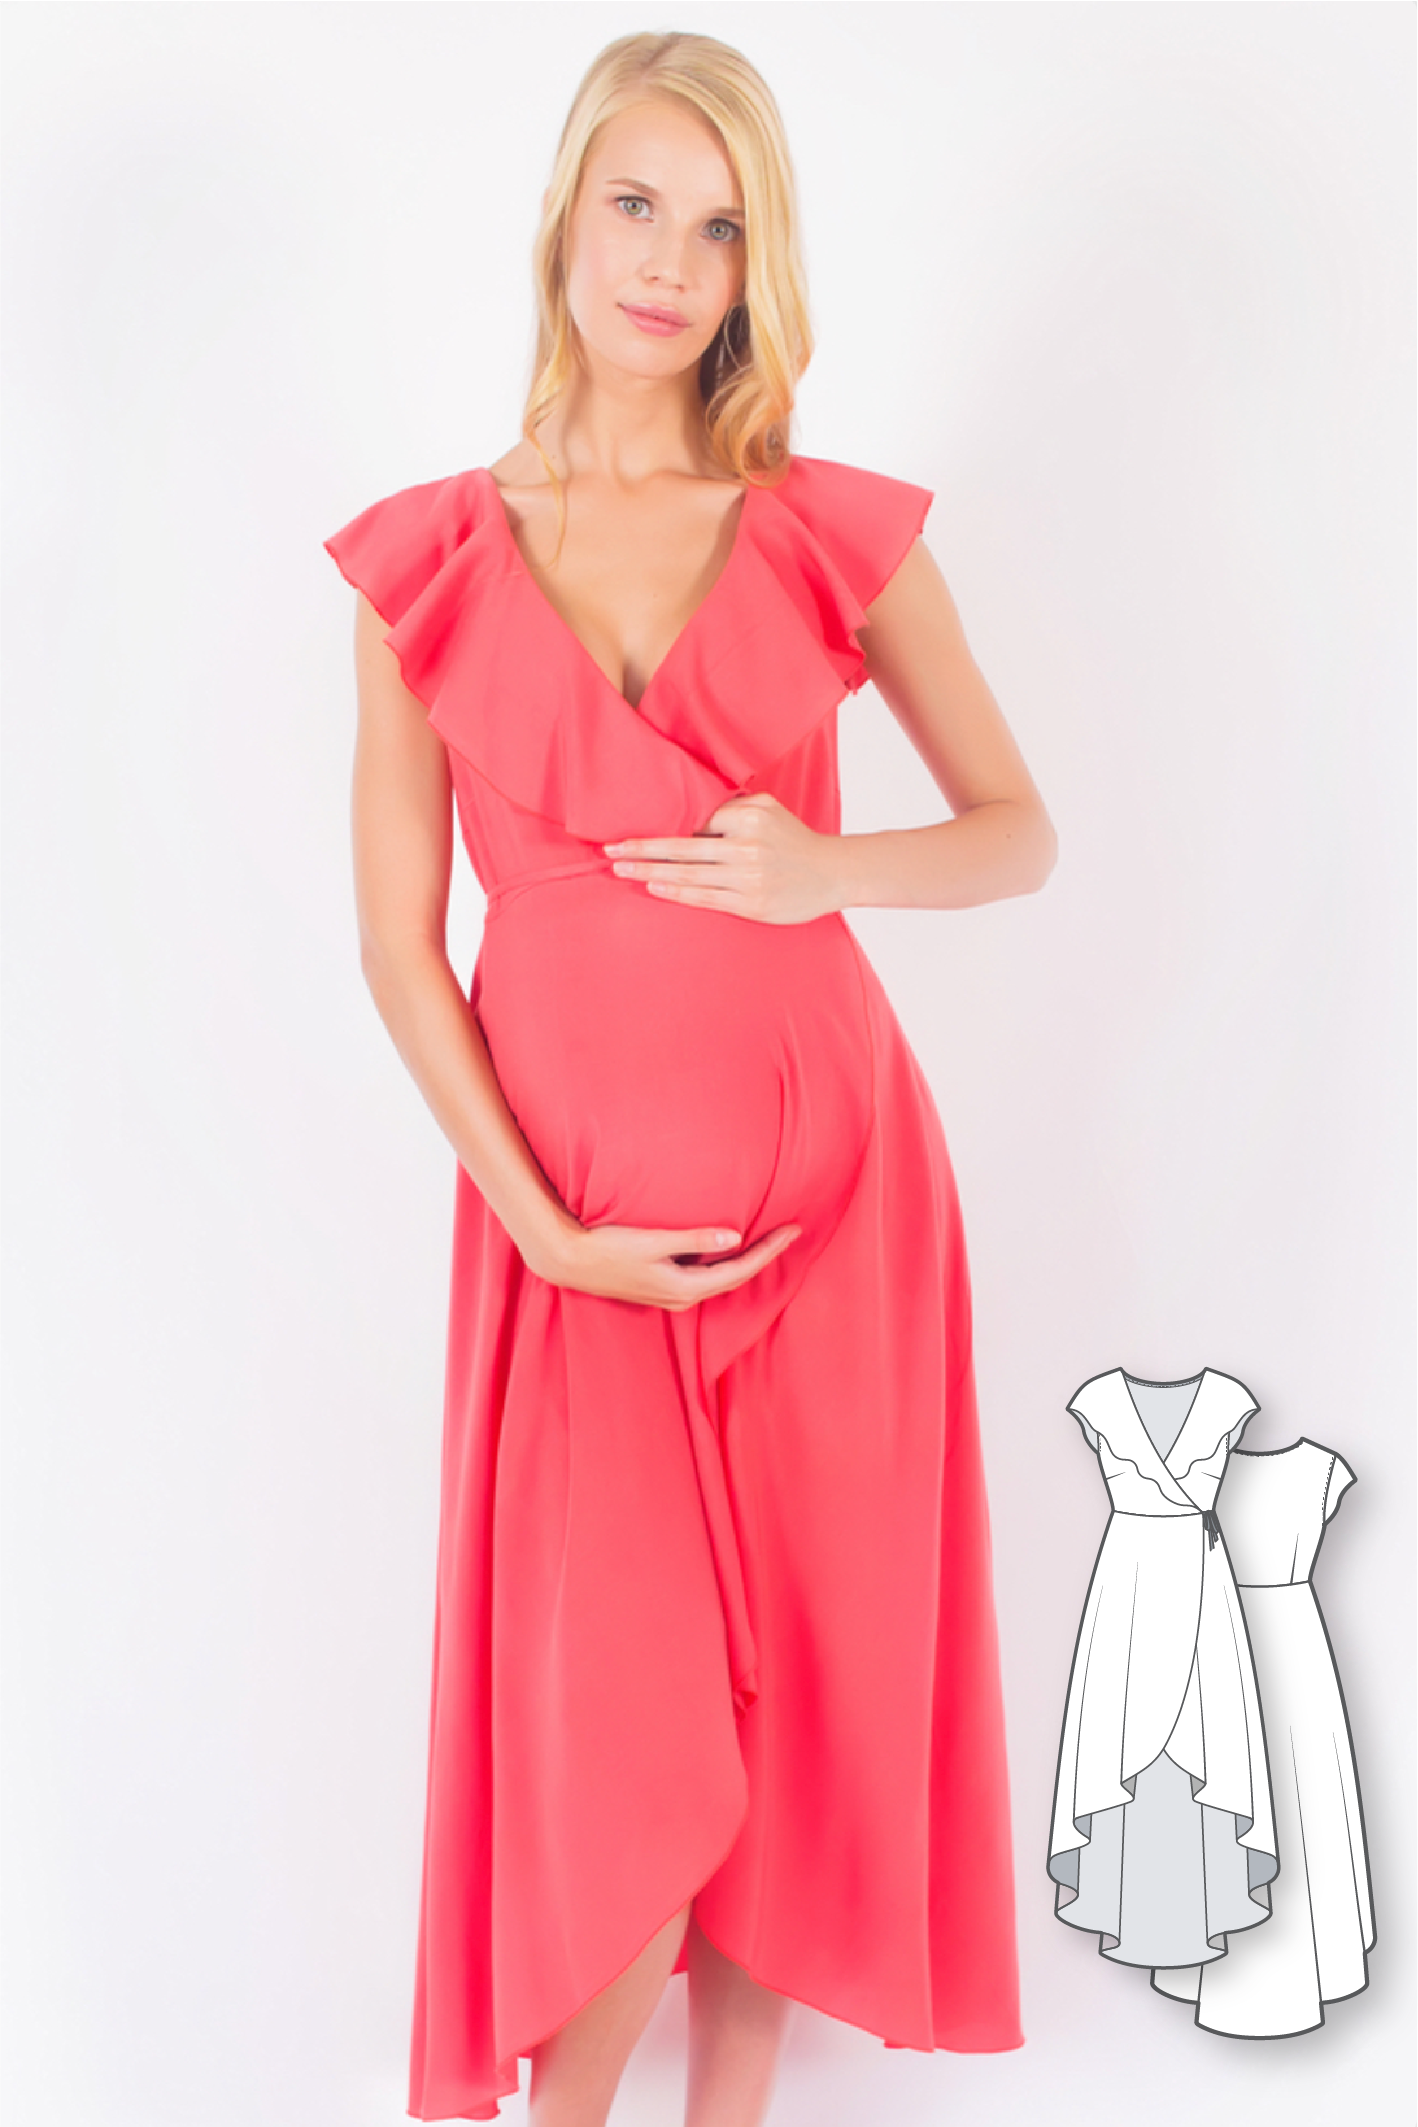 Vintage Maternity Dresses Sewing Pattern - McCalls No. 2651 - Angel  Elegance Vintage